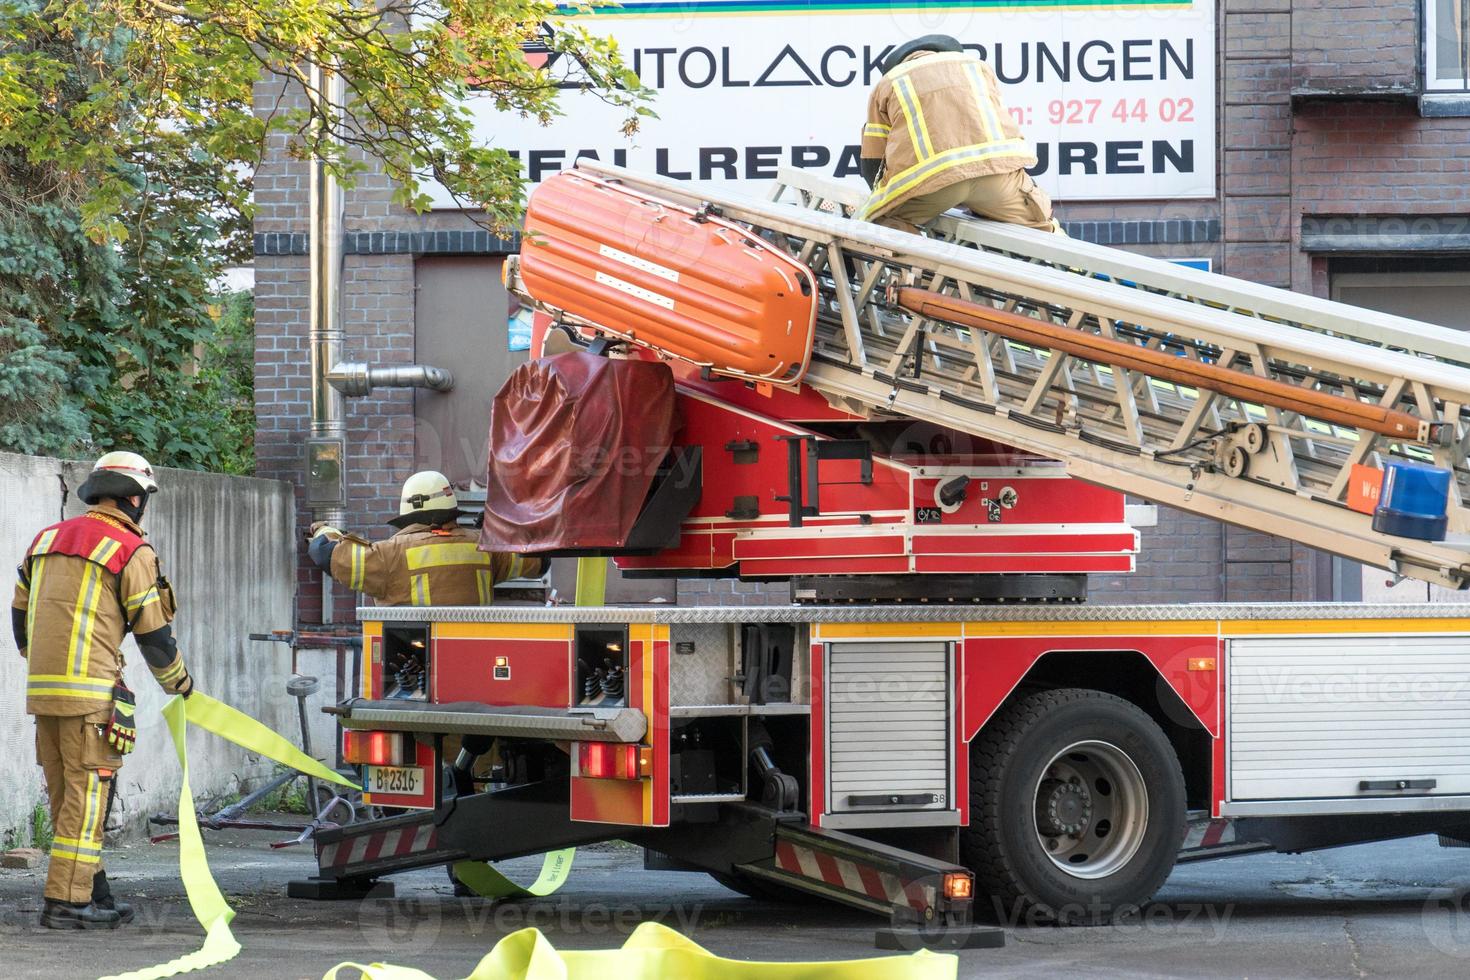 vigile del fuoco berlinese al lavoro foto